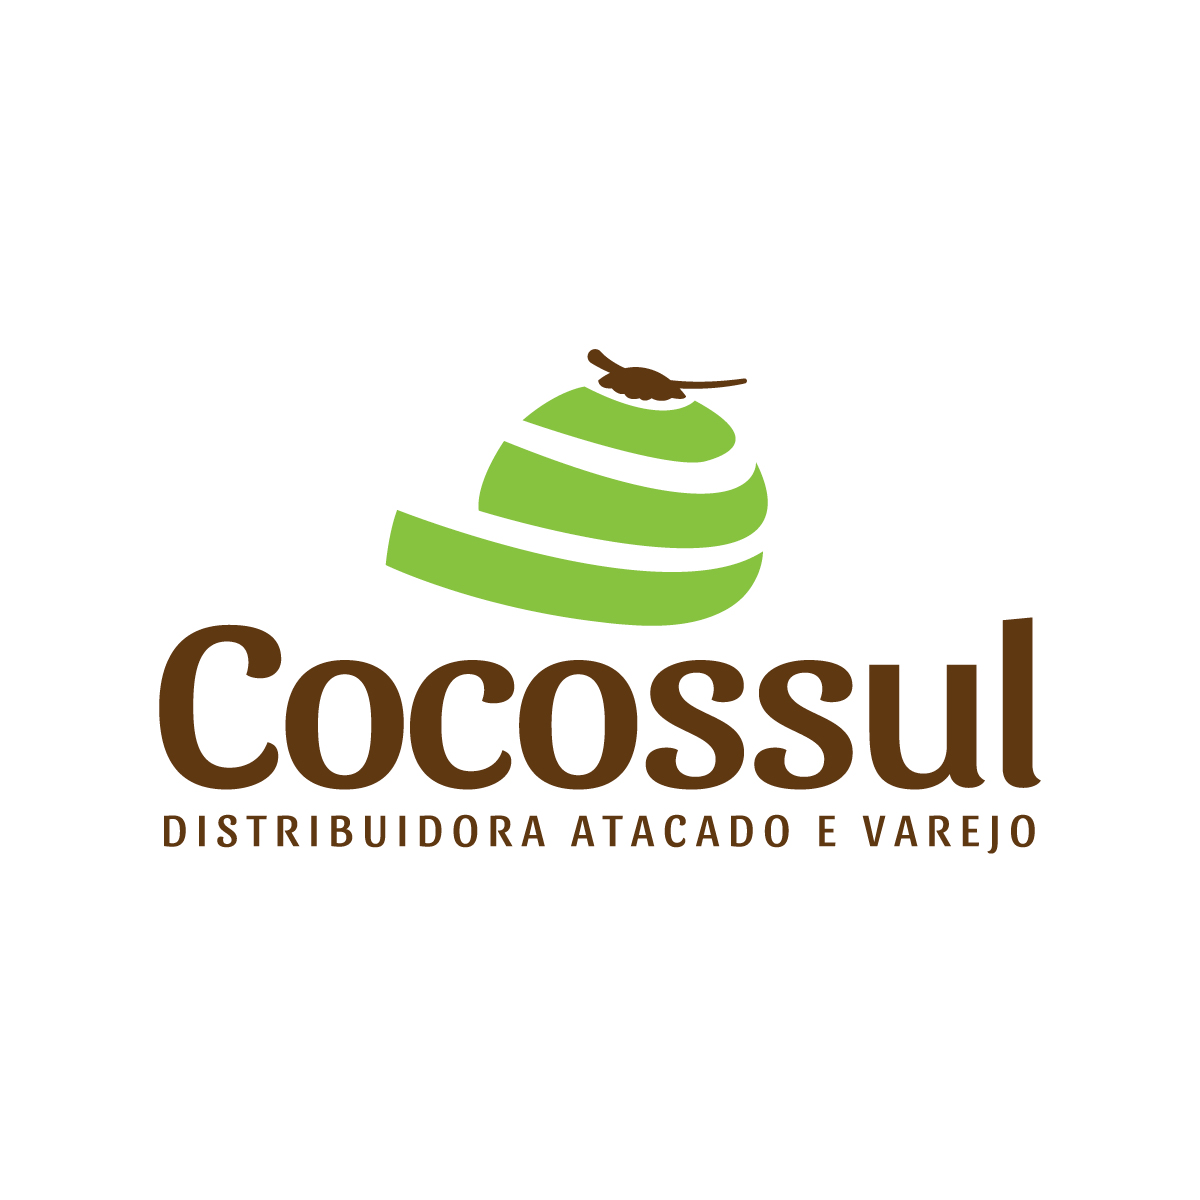 Cocossul